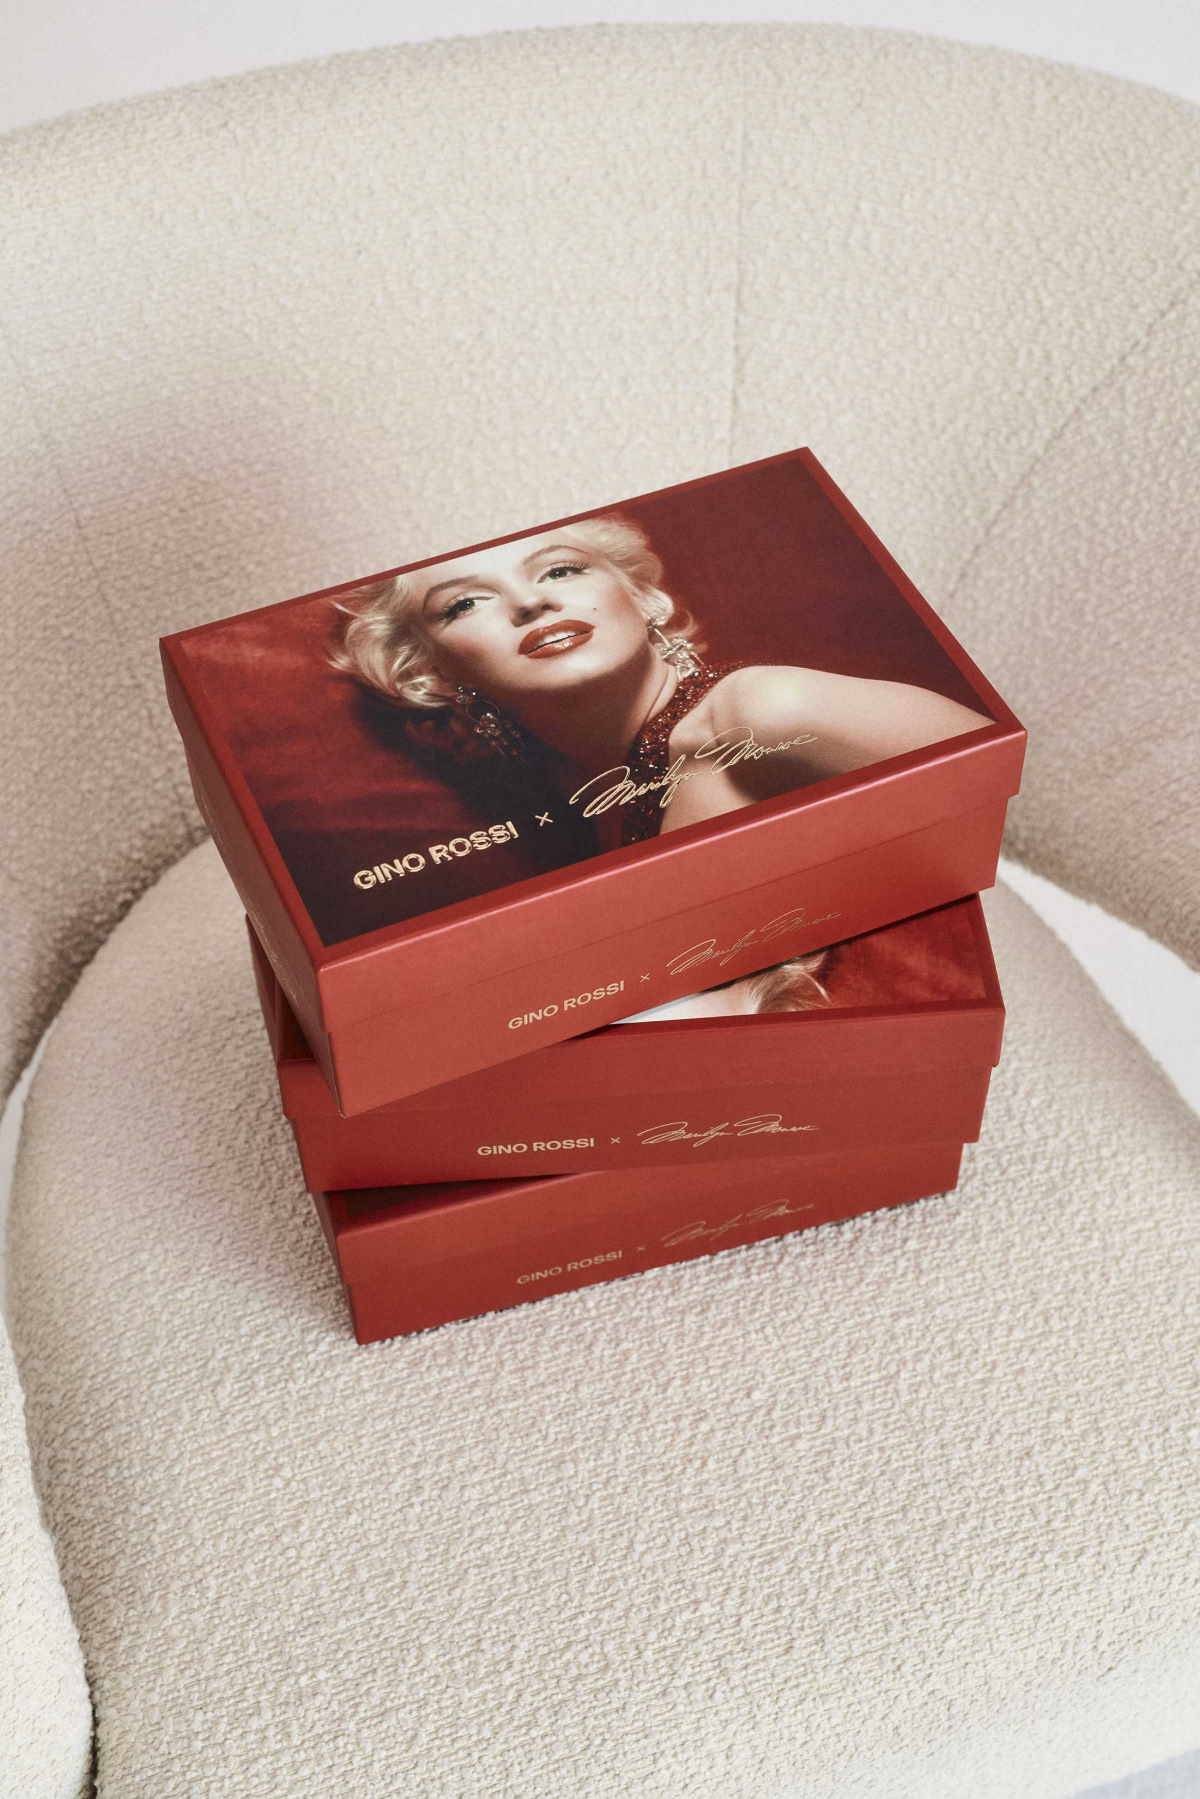 Gino Rossi przedstawia limitowaną kolekcję butów i torebek inspirowanych Marylin Monroe. Każdy element zapakowany jest w pudełko z cytatem ikony kina.